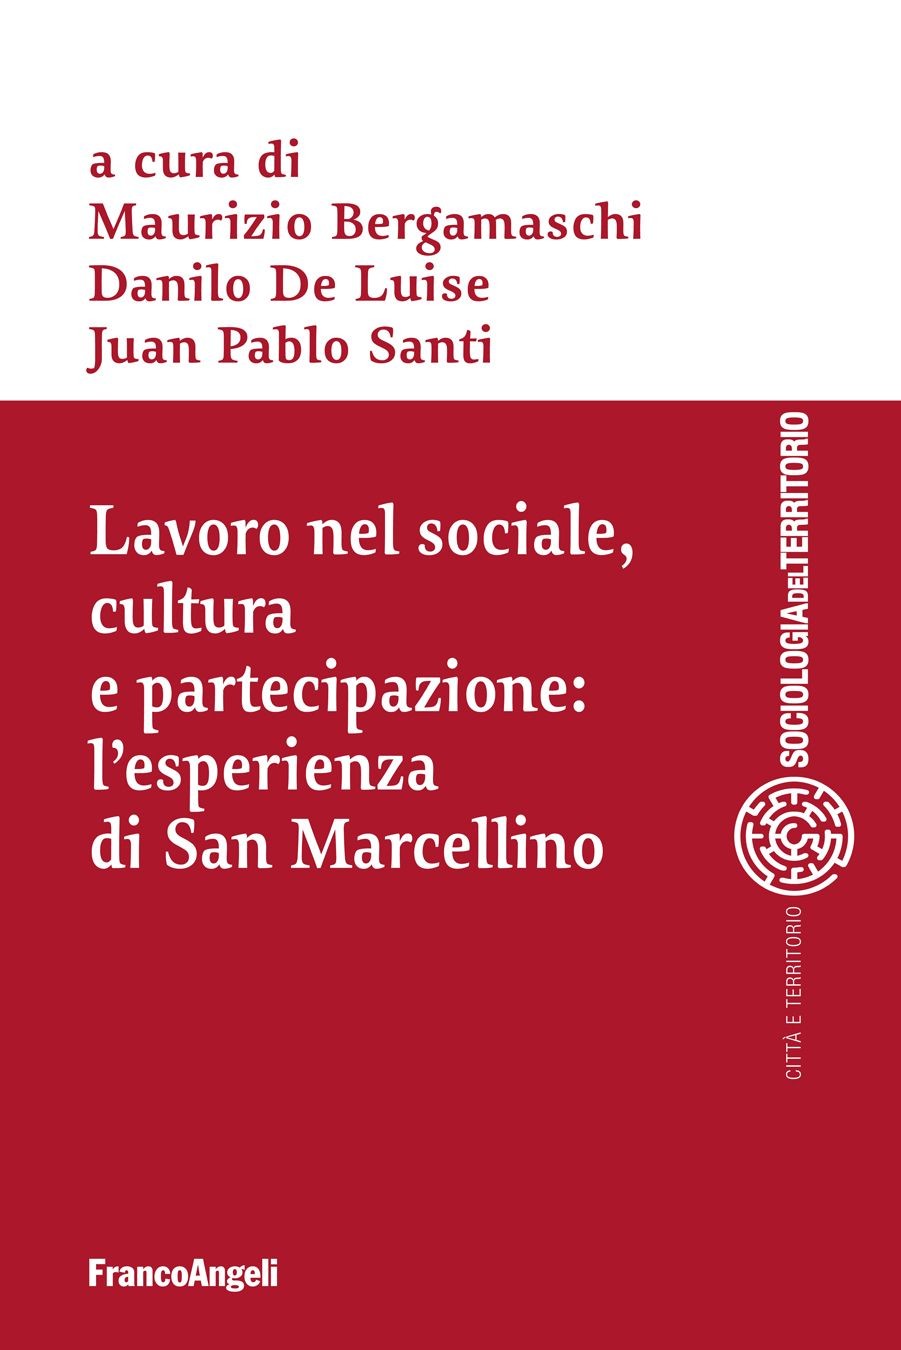 Lavoro nel sociale, cultura e partecipazione: l'esperienza di San Marcellino - Librerie.coop